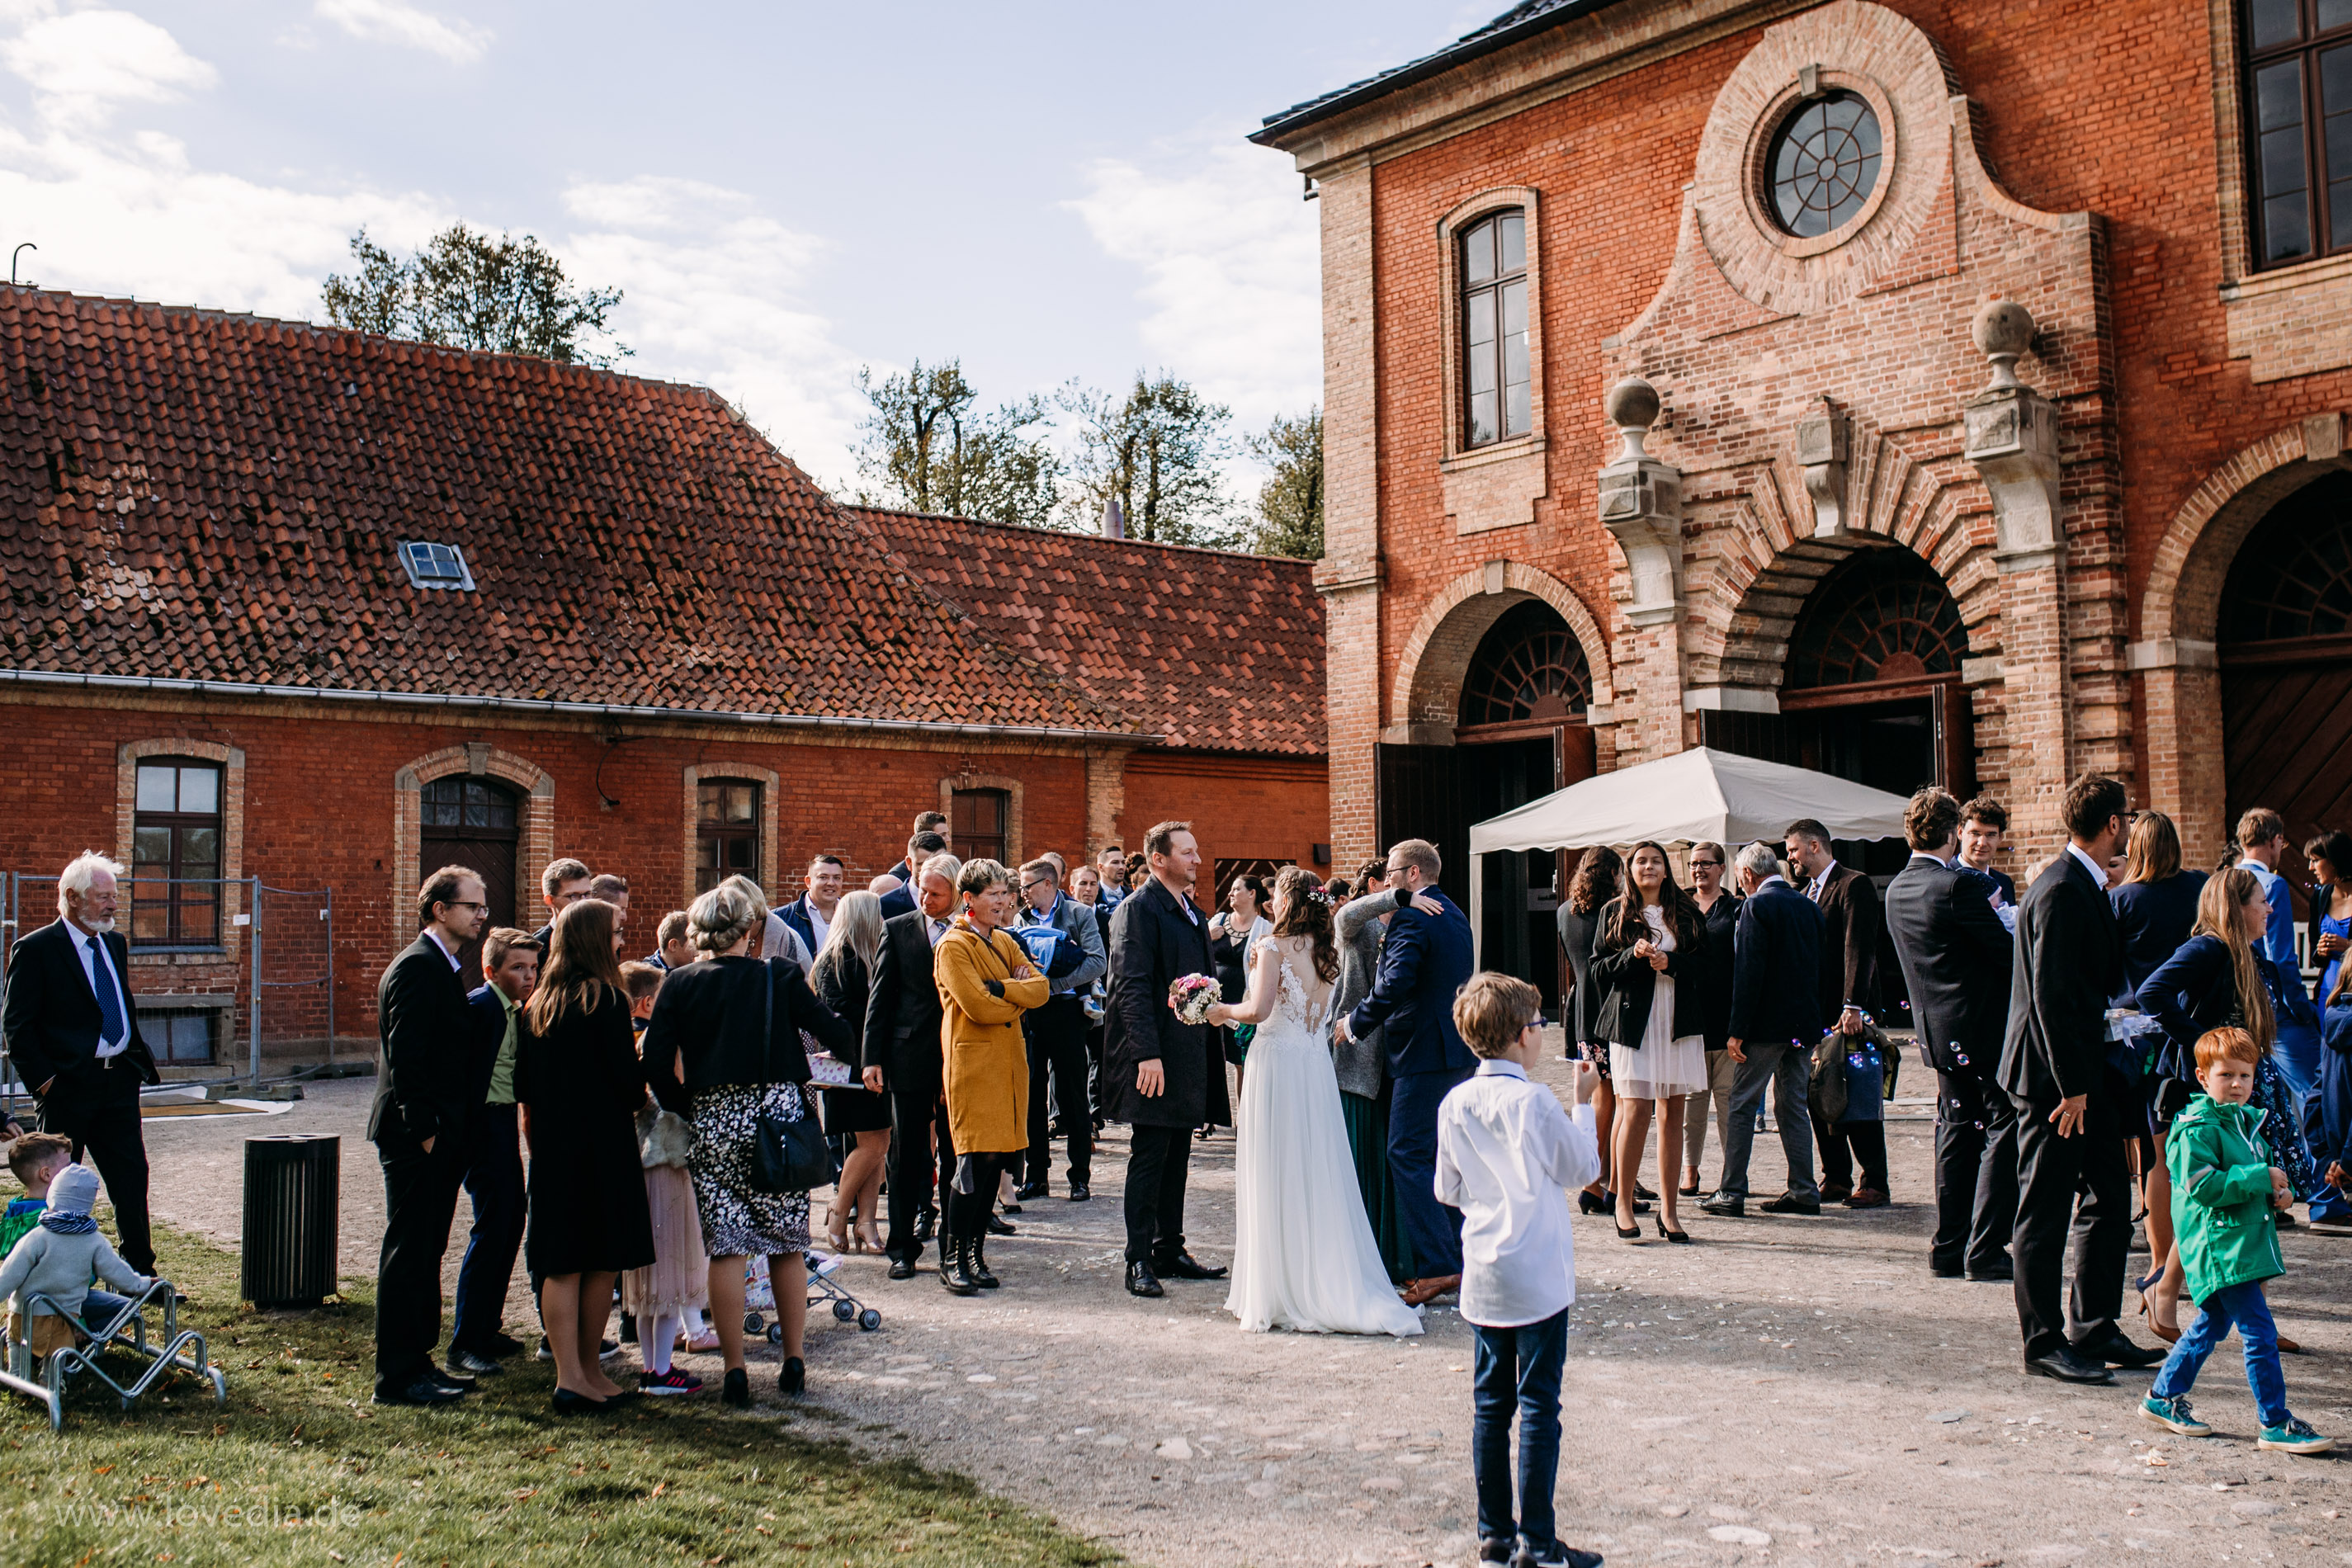 Hochzeitsfotograf für kreative und emotionale Hochzeitsportraits & Hochzeitsreportagen in im Schloss Bothmer, Kluetz